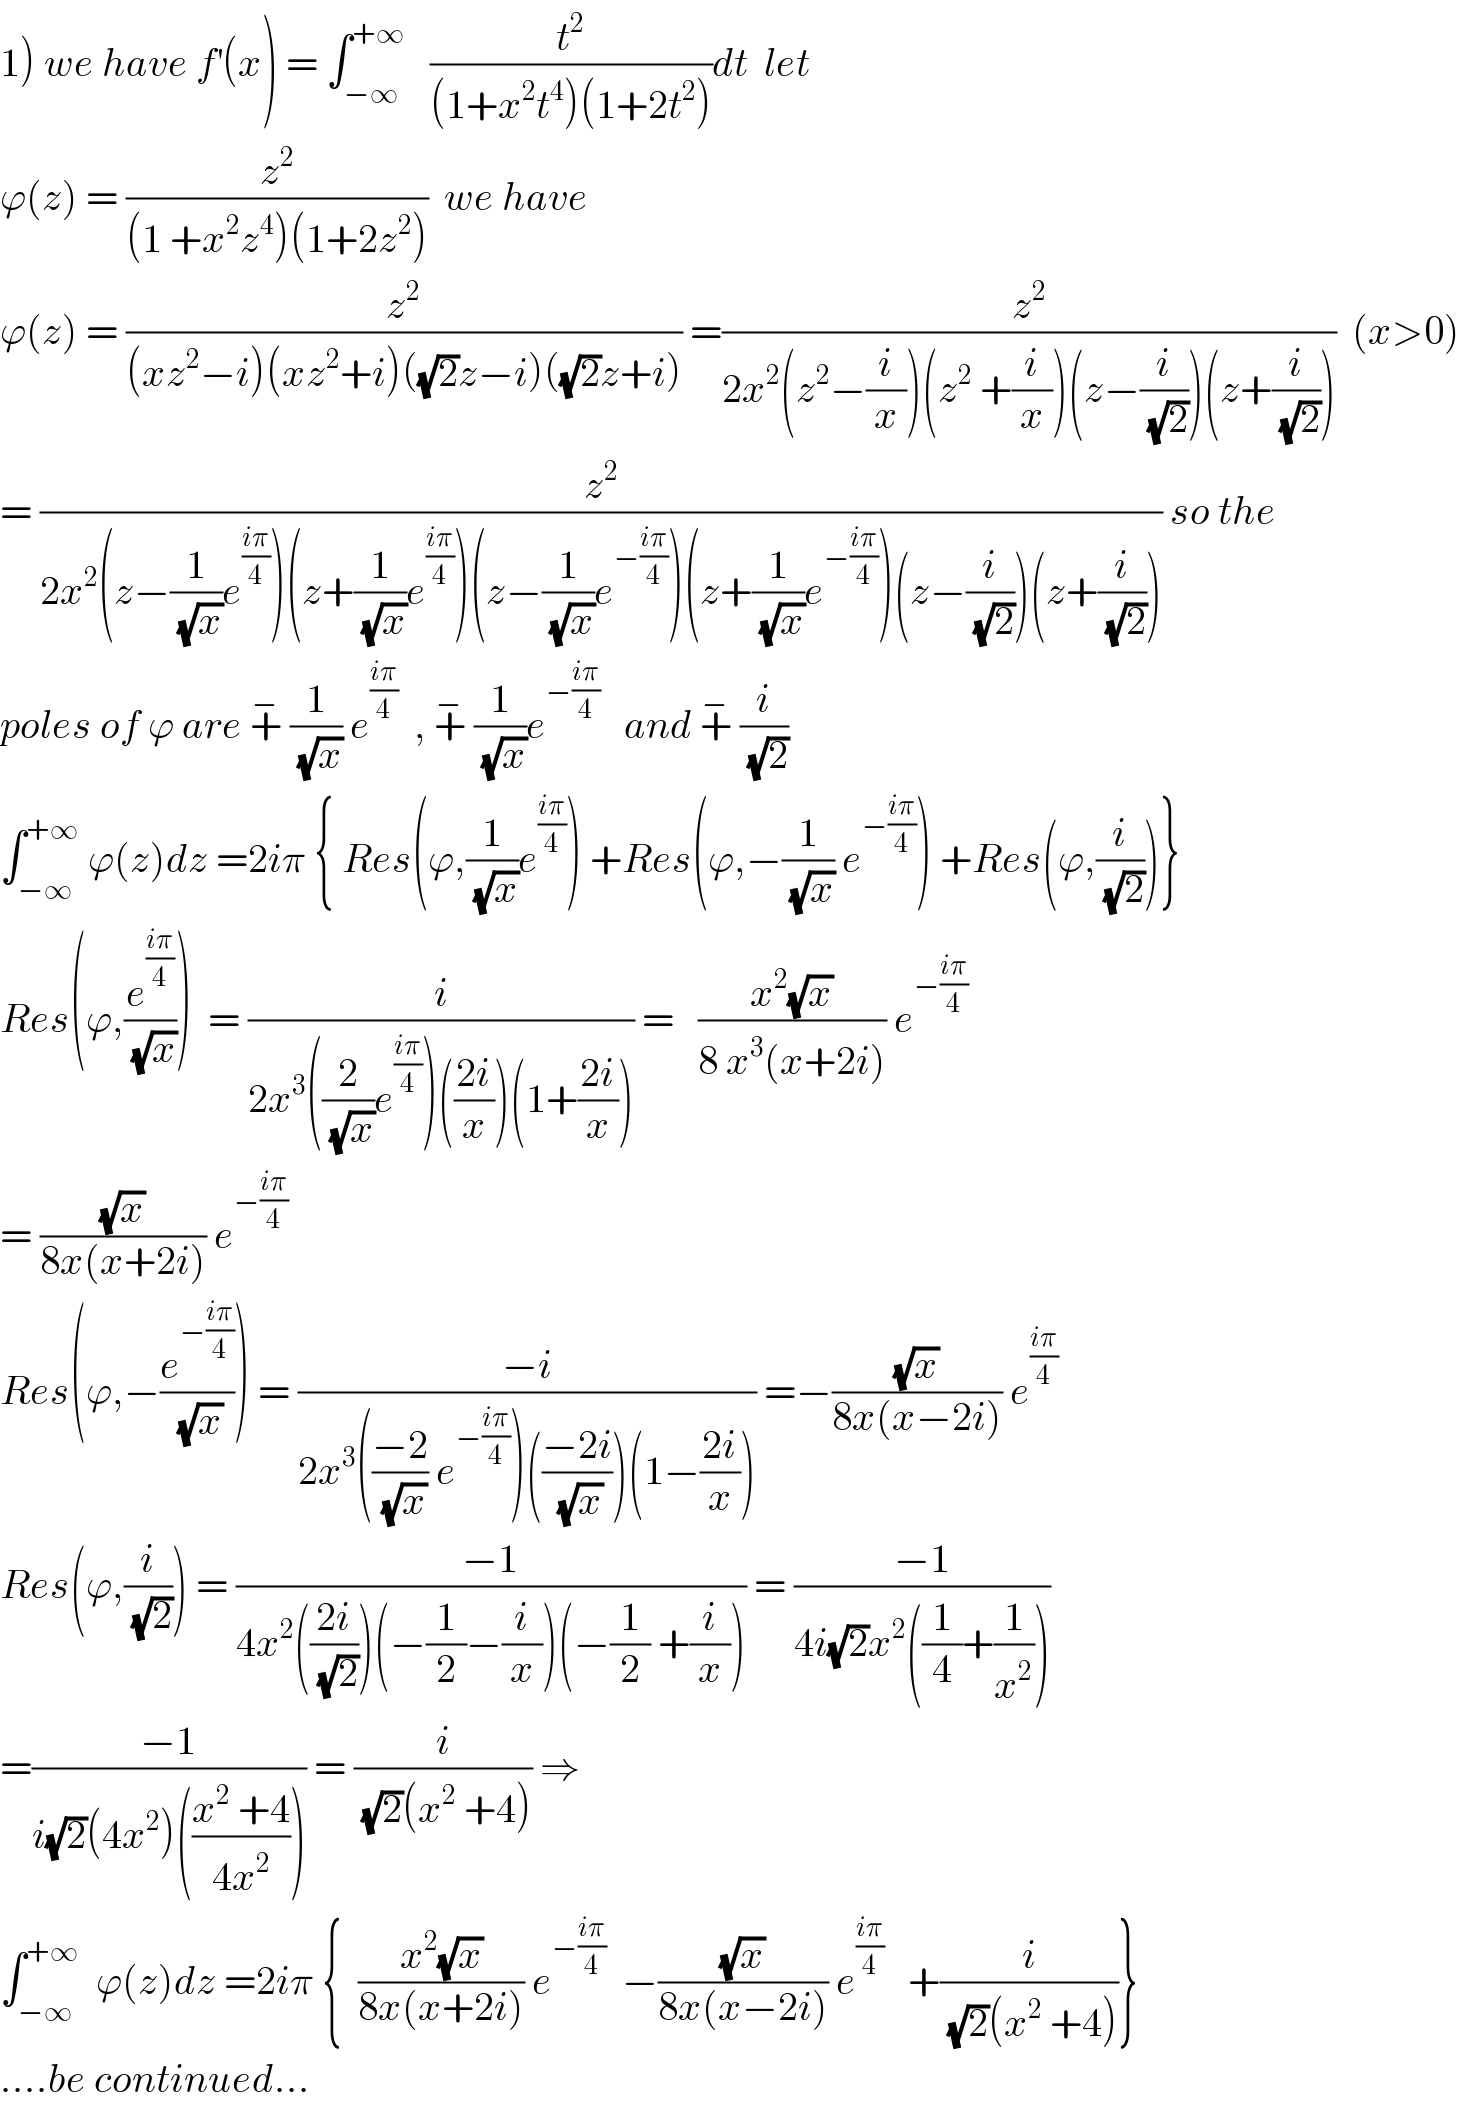 1) we have f^′ (x) = ∫_(−∞) ^(+∞)    (t^2 /((1+x^2 t^4 )(1+2t^2 )))dt  let   ϕ(z) = (z^2 /((1 +x^2 z^4 )(1+2z^2 )))  we have  ϕ(z) = (z^2 /((xz^2 −i)(xz^2 +i)((√2)z−i)((√2)z+i))) =(z^2 /(2x^2 (z^2 −(i/x))(z^2  +(i/x))(z−(i/(√2)))(z+(i/(√2)))))  (x>0)  = (z^2 /(2x^2 (z−(1/(√x))e^((iπ)/4) )(z+(1/(√x))e^((iπ)/4) )(z−(1/(√x))e^(−((iπ)/4)) )(z+(1/(√x))e^(−((iπ)/4)) )(z−(i/(√2)))(z+(i/(√2))))) so the  poles of ϕ are +^−  (1/(√x)) e^((iπ)/4)   , +^−  (1/(√x))e^(−((iπ)/4))    and +^−  (i/(√2))  ∫_(−∞) ^(+∞)  ϕ(z)dz =2iπ { Res(ϕ,(1/(√x))e^((iπ)/4) ) +Res(ϕ,−(1/(√x)) e^(−((iπ)/4)) ) +Res(ϕ,(i/(√2)))}  Res(ϕ,(e^((iπ)/4) /(√x)))  = (i/(2x^3 ((2/(√x))e^((iπ)/4) )(((2i)/x))(1+((2i)/x)))) =   ((x^2 (√x))/(8 x^3 (x+2i))) e^(−((iπ)/4))   = ((√x)/(8x(x+2i))) e^(−((iπ)/4))   Res(ϕ,−(e^(−((iπ)/4)) /(√x))) = ((−i)/(2x^3 (((−2)/(√x)) e^(−((iπ)/4)) )(((−2i)/(√x)))(1−((2i)/x)))) =−((√x)/(8x(x−2i))) e^((iπ)/4)   Res(ϕ,(i/(√2))) = ((−1)/(4x^2 (((2i)/(√2)))(−(1/2)−(i/x))(−(1/2) +(i/x)))) = ((−1)/(4i(√2)x^2 ((1/4)+(1/x^2 ))))  =((−1)/(i(√2)(4x^2 )(((x^2  +4)/(4x^2 ))))) = (i/((√2)(x^2  +4))) ⇒  ∫_(−∞) ^(+∞)   ϕ(z)dz =2iπ {  ((x^2 (√x))/(8x(x+2i))) e^(−((iπ)/4))   −((√x)/(8x(x−2i))) e^((iπ)/4)    +(i/((√2)(x^2  +4)))}  ....be continued...  